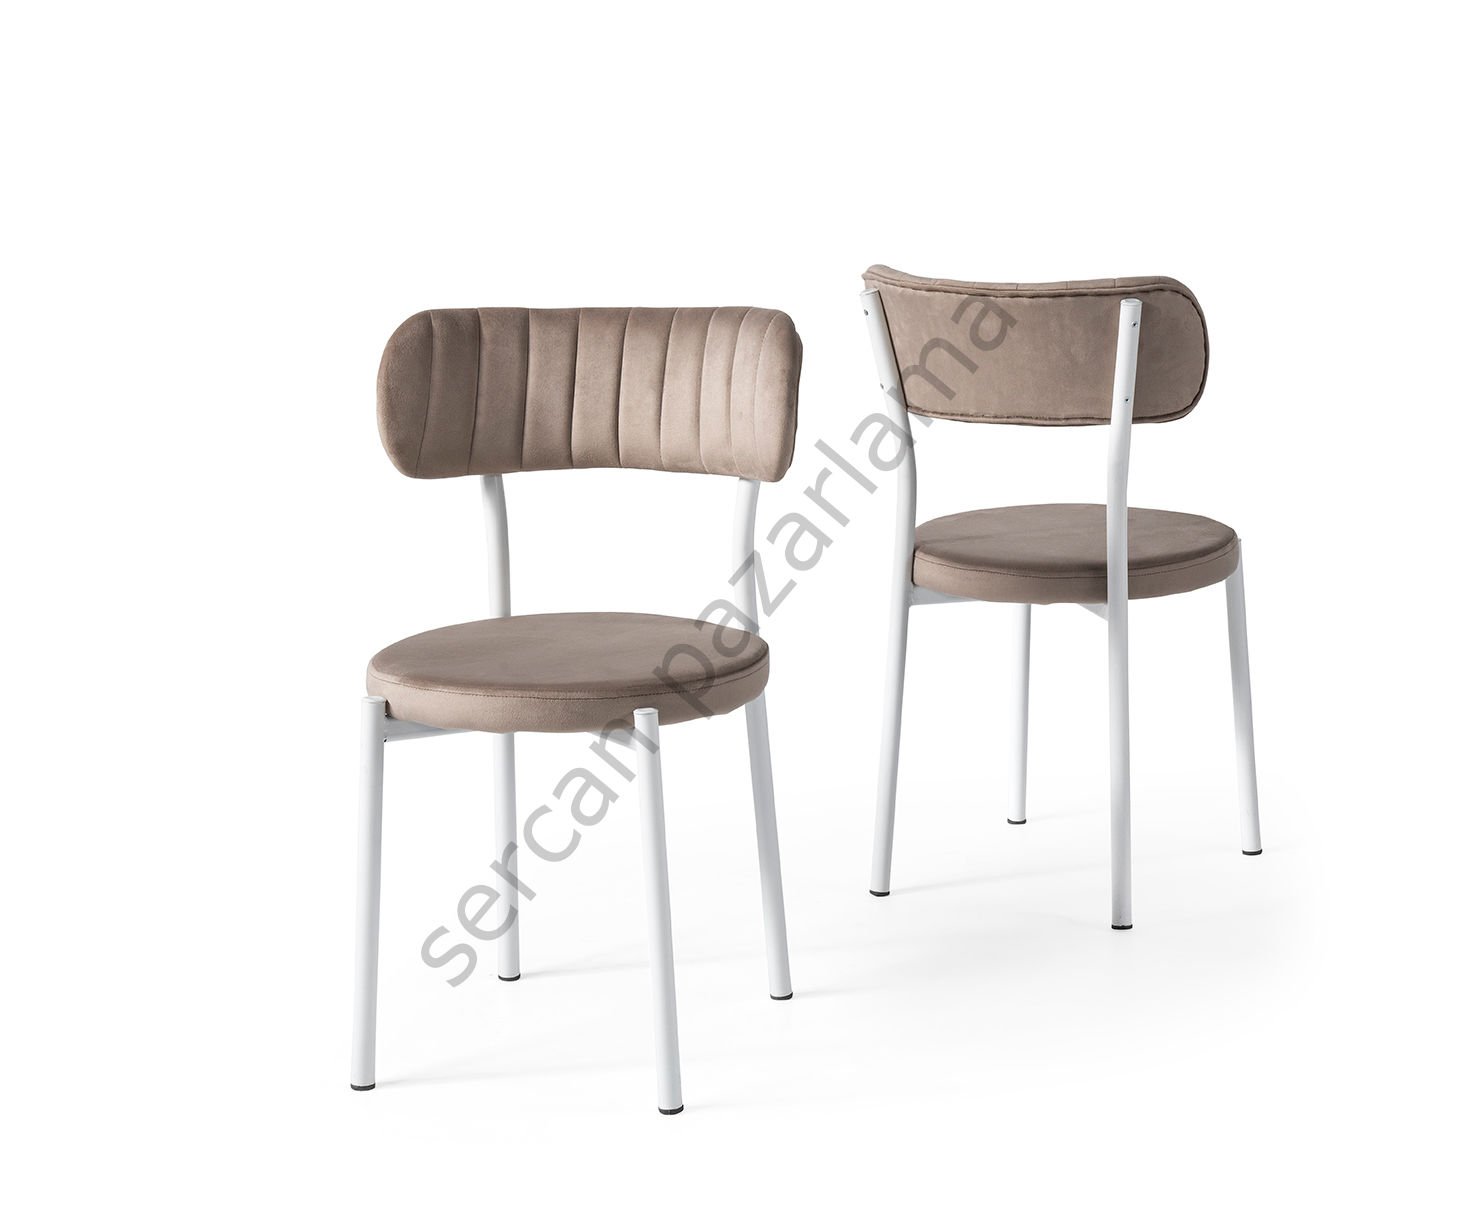 2382 - Beta Sandalye - Beyaz/Kahve